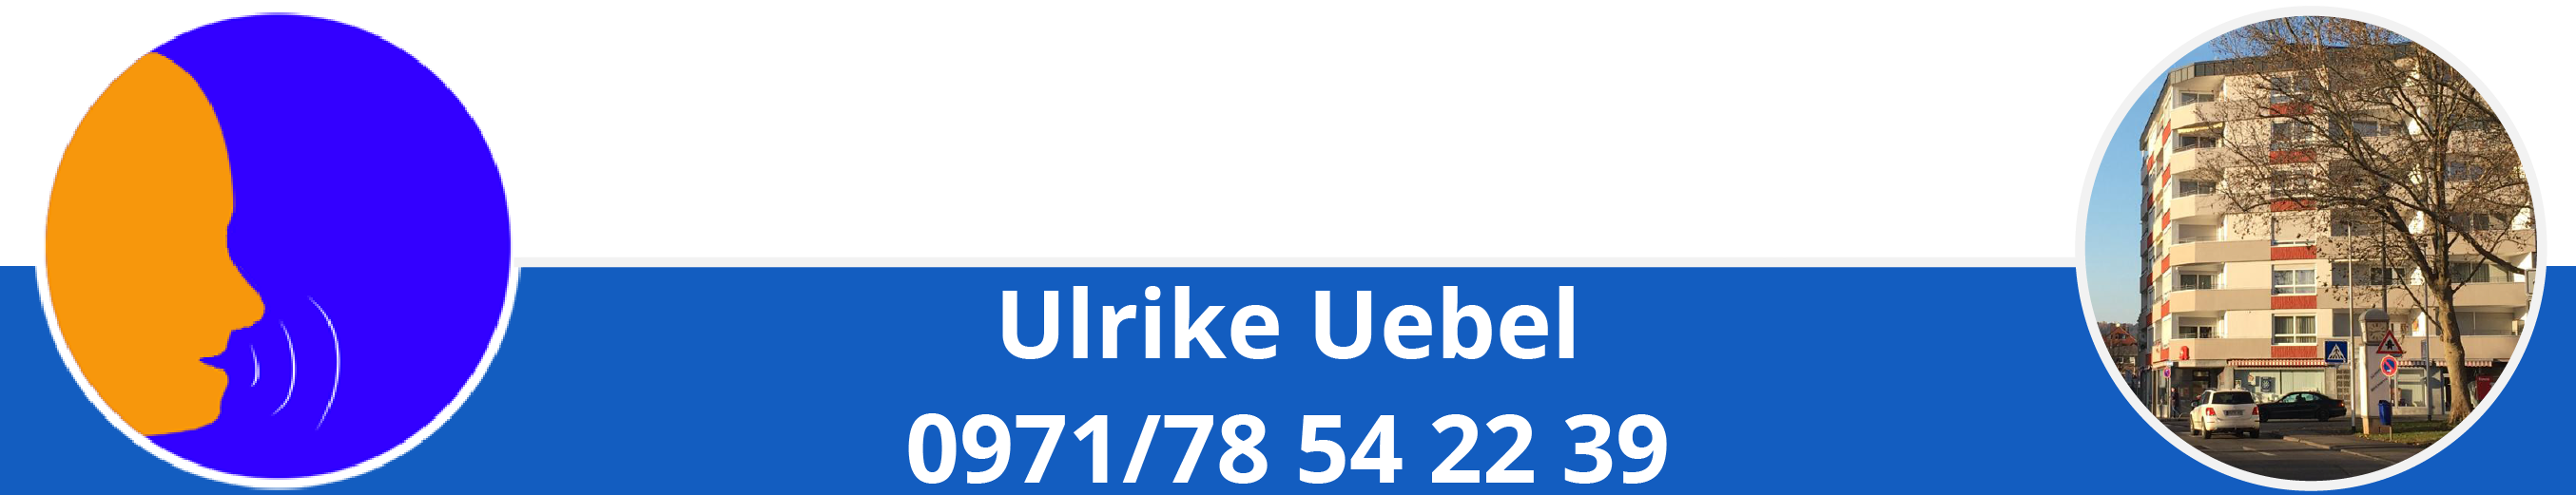 Logopädie Adlerhaus Ulrike Uebel